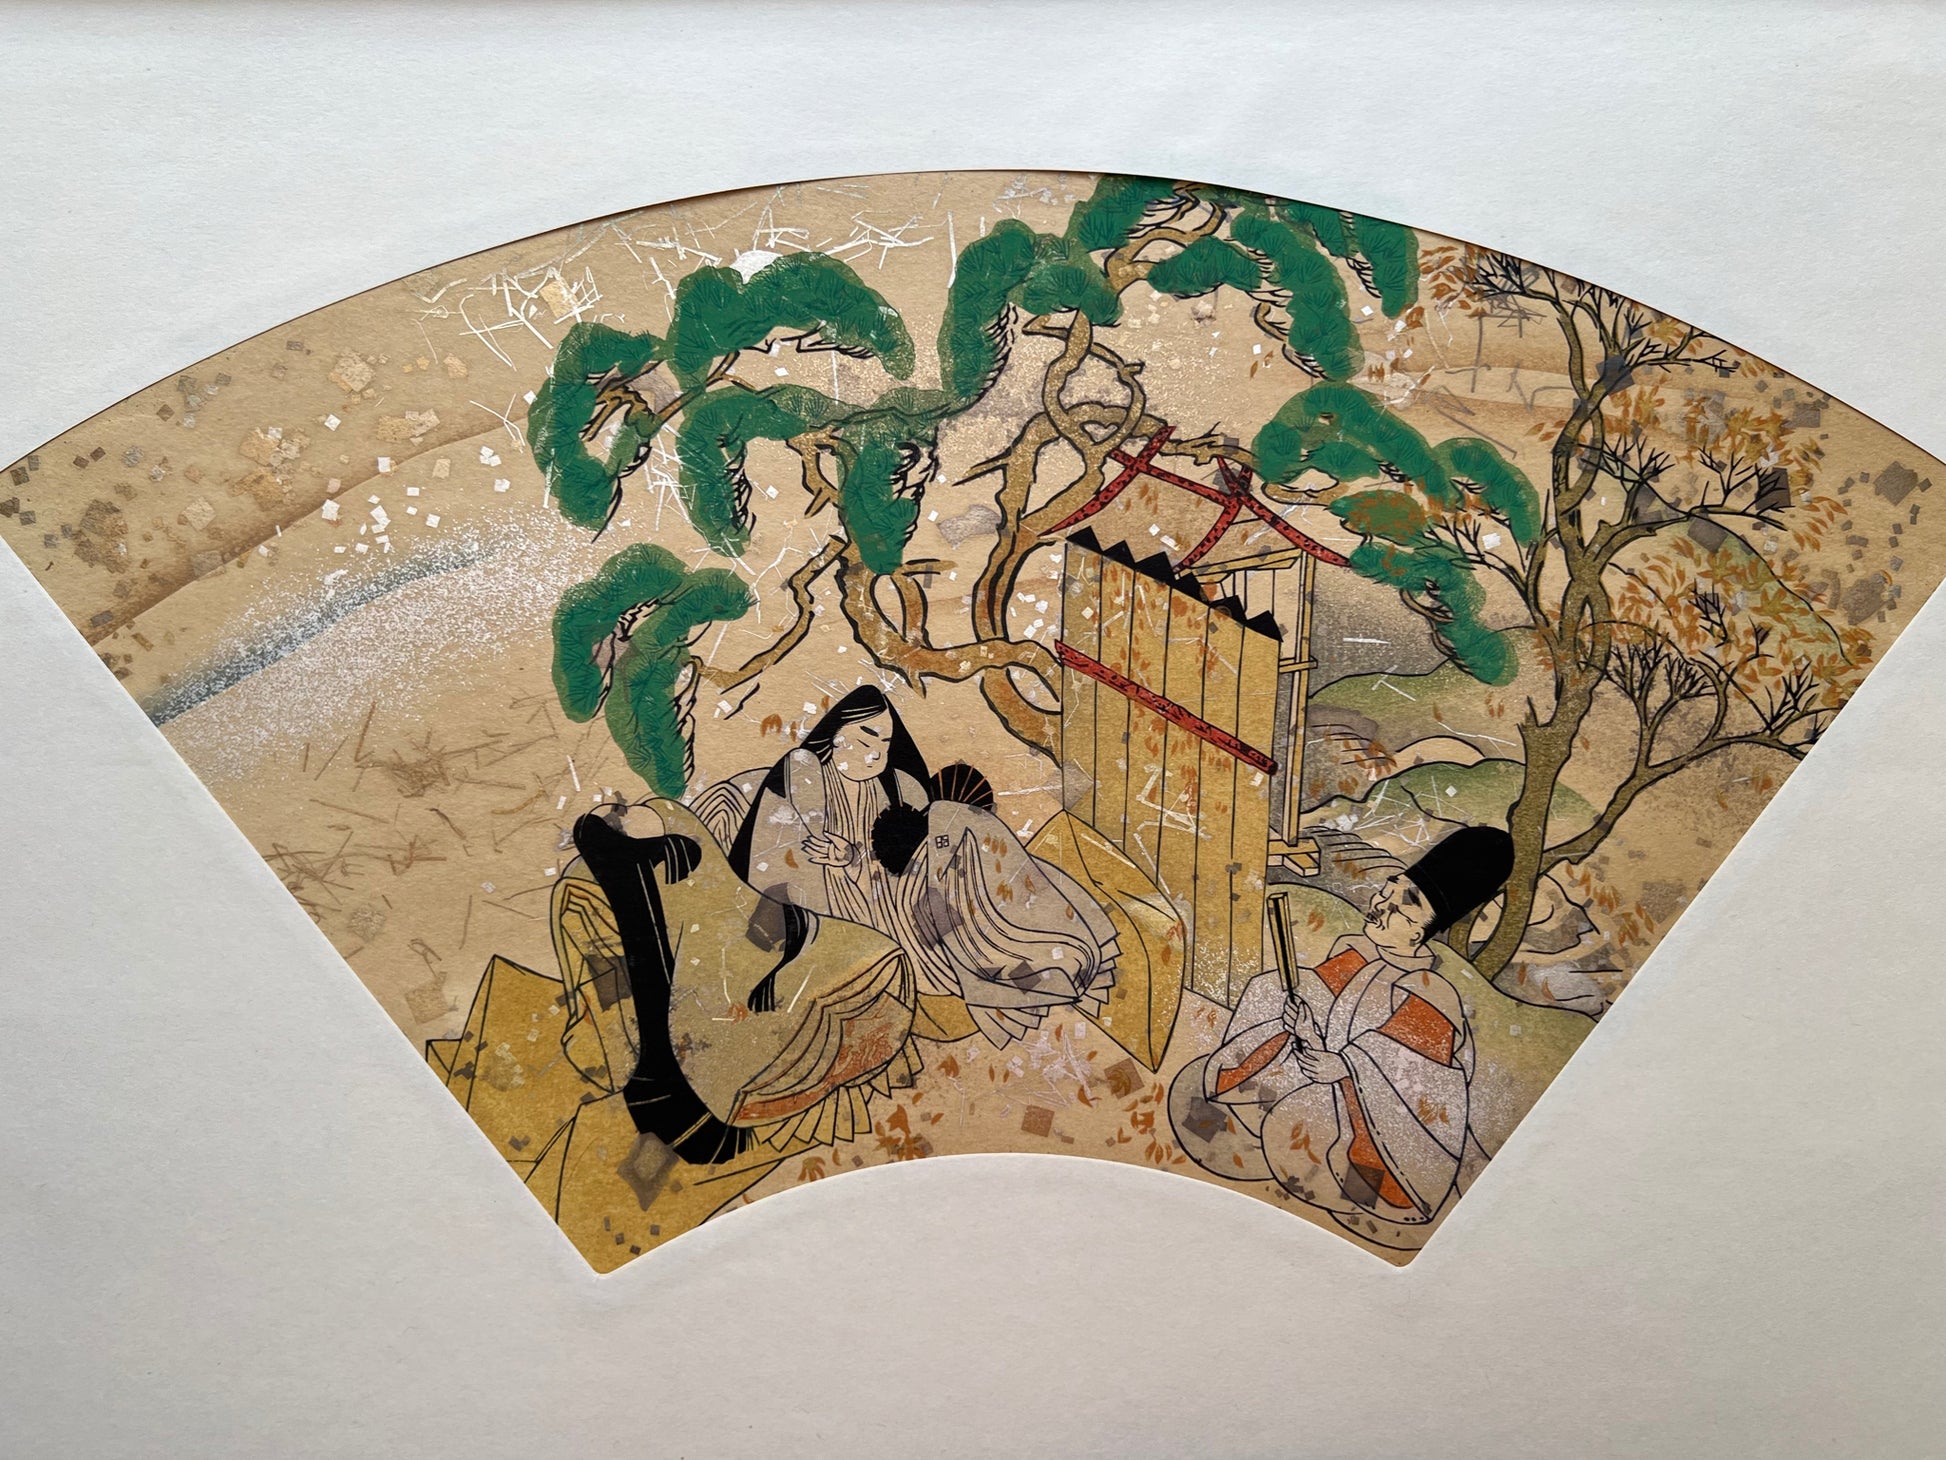 Estampe japonaise en forme d'éventail parsemée de fragments d'or et d'argent, deux femmes et un homme assis près d'un pin japonais, série sutra du lotus.